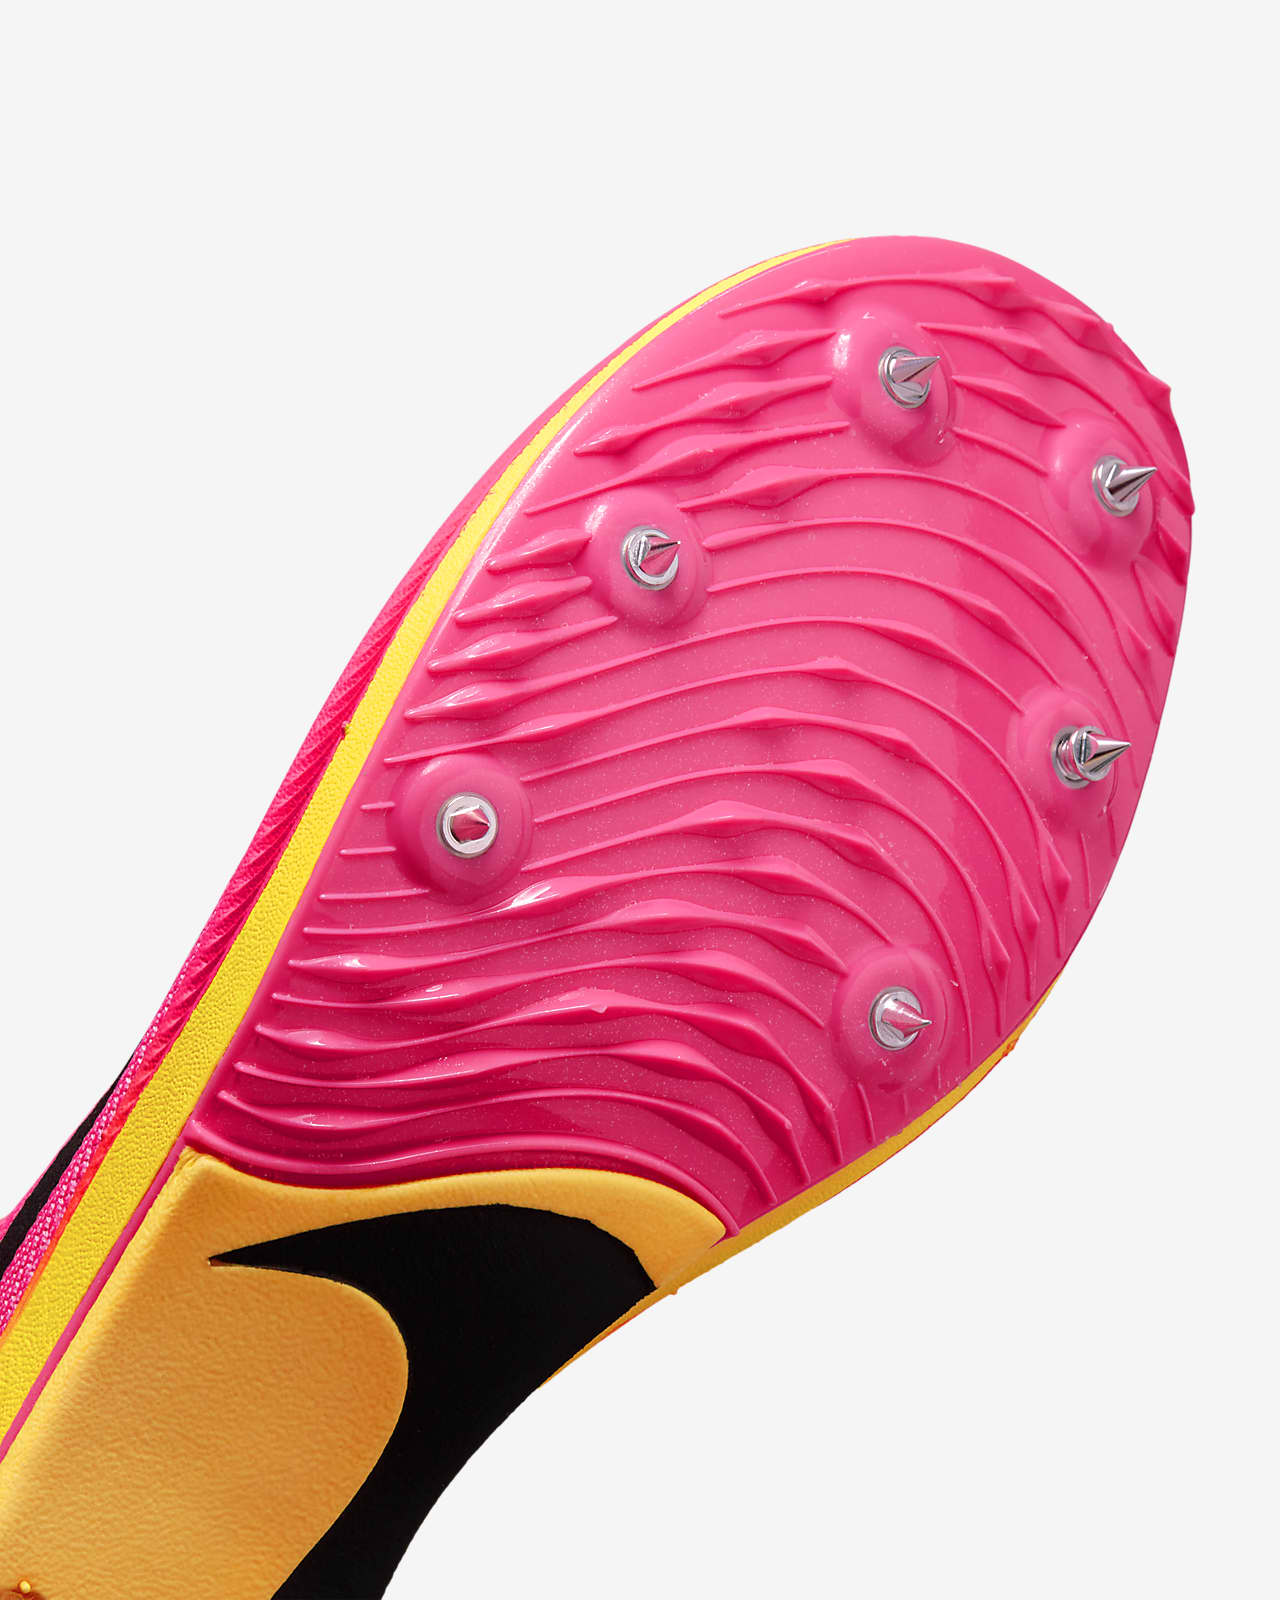 Nike ZoomX Dragonfly: Las zapatillas de clavos que baten récords